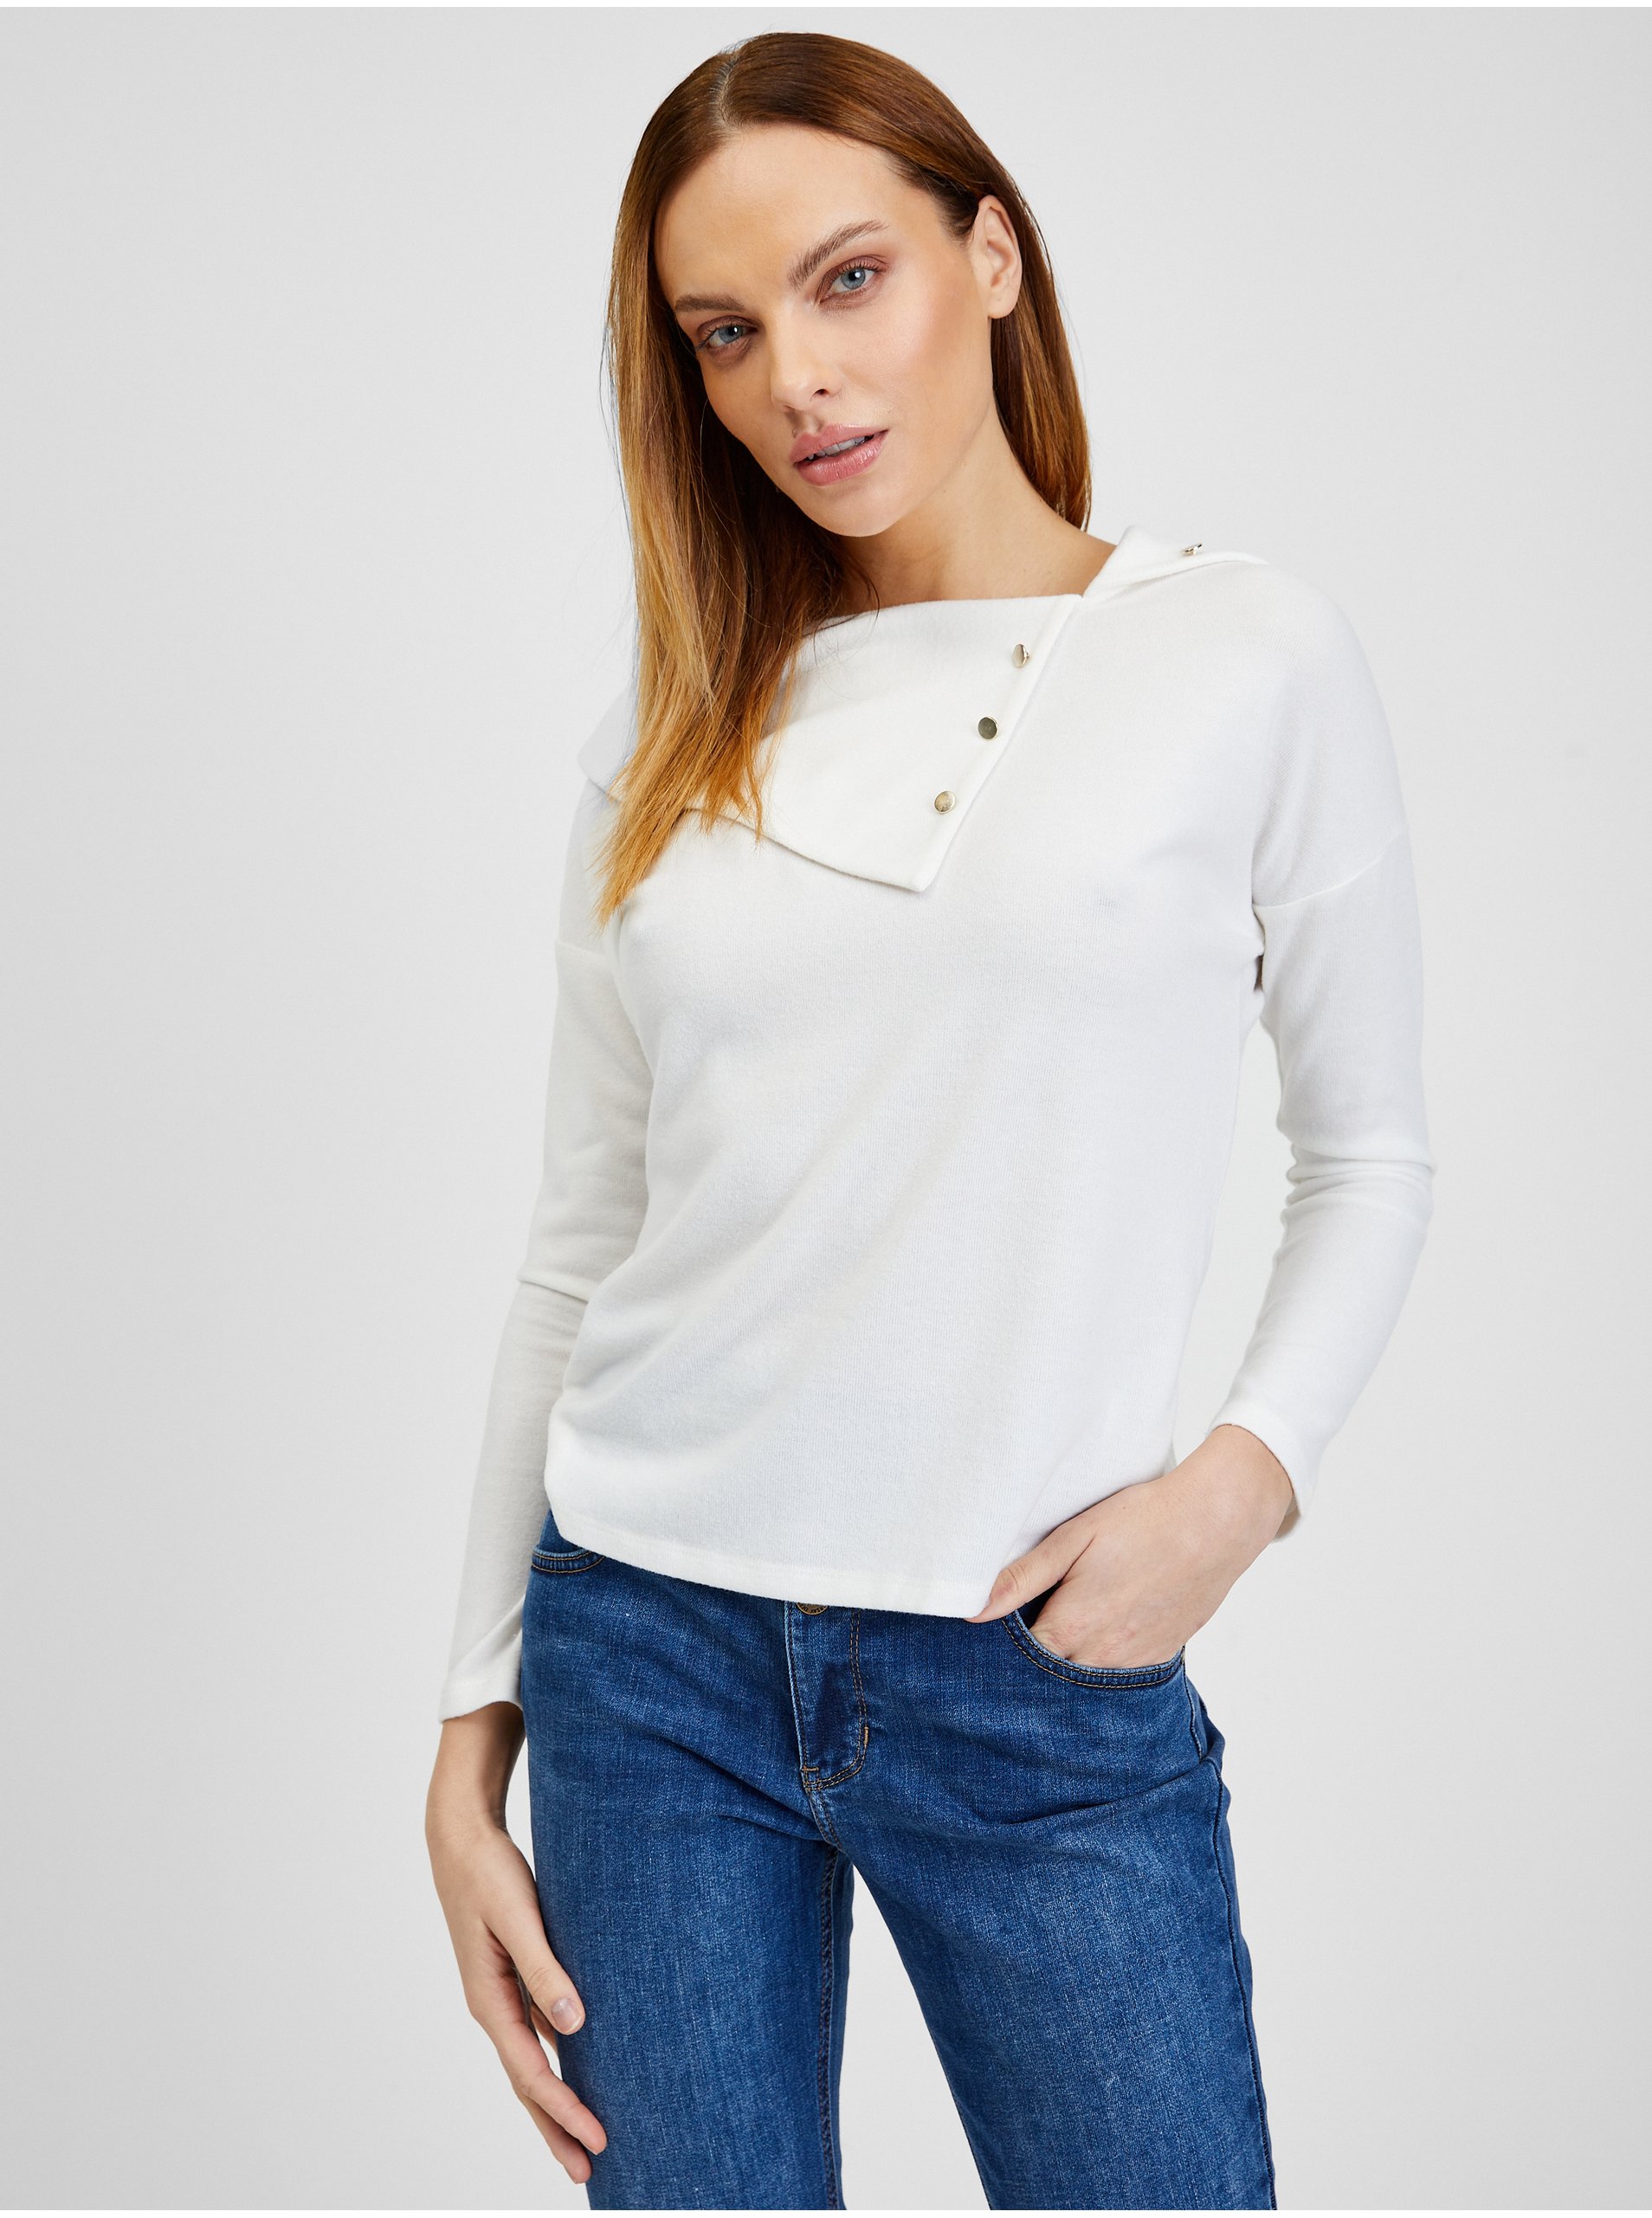 E-shop Bílé dámské tričko s ozdobnými detaily ORSAY